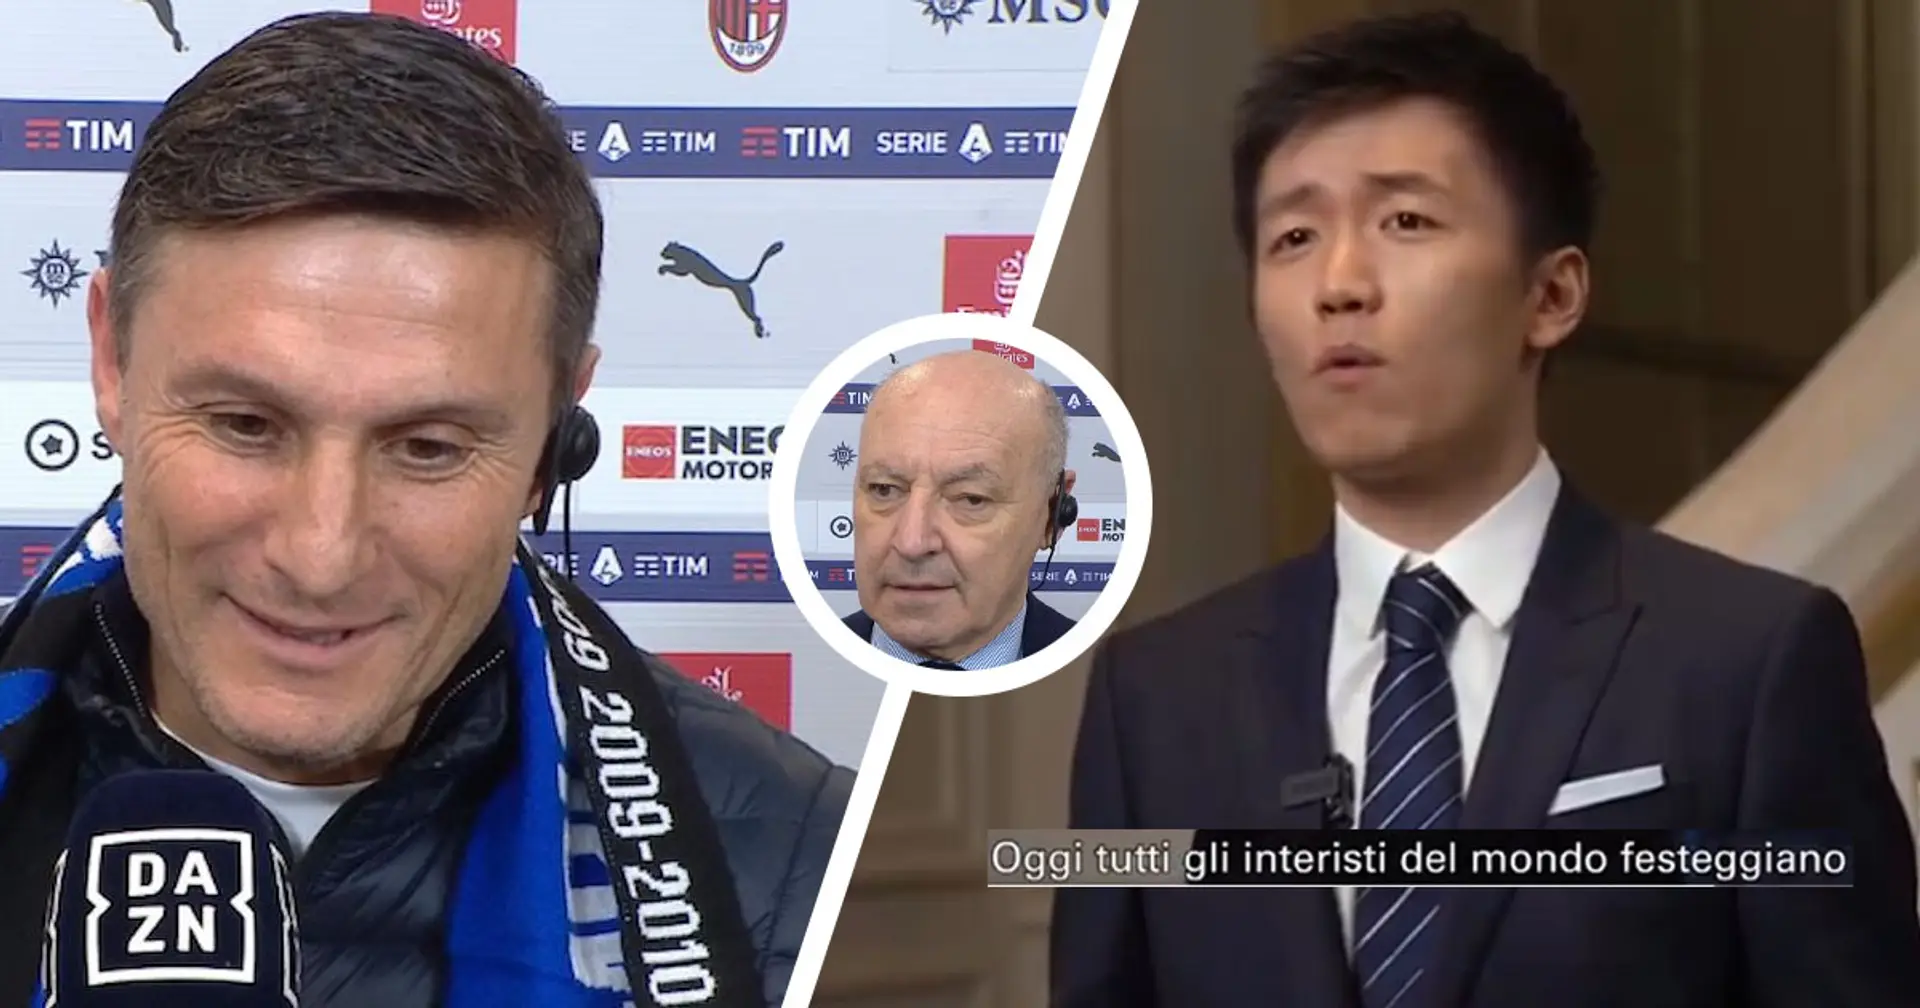 Steven Zhang, Beppe Marotta e Javier Zanetti in estasi per lo Scudetto 23/24 dell'Inter: "Risultato storico e fenomenale"